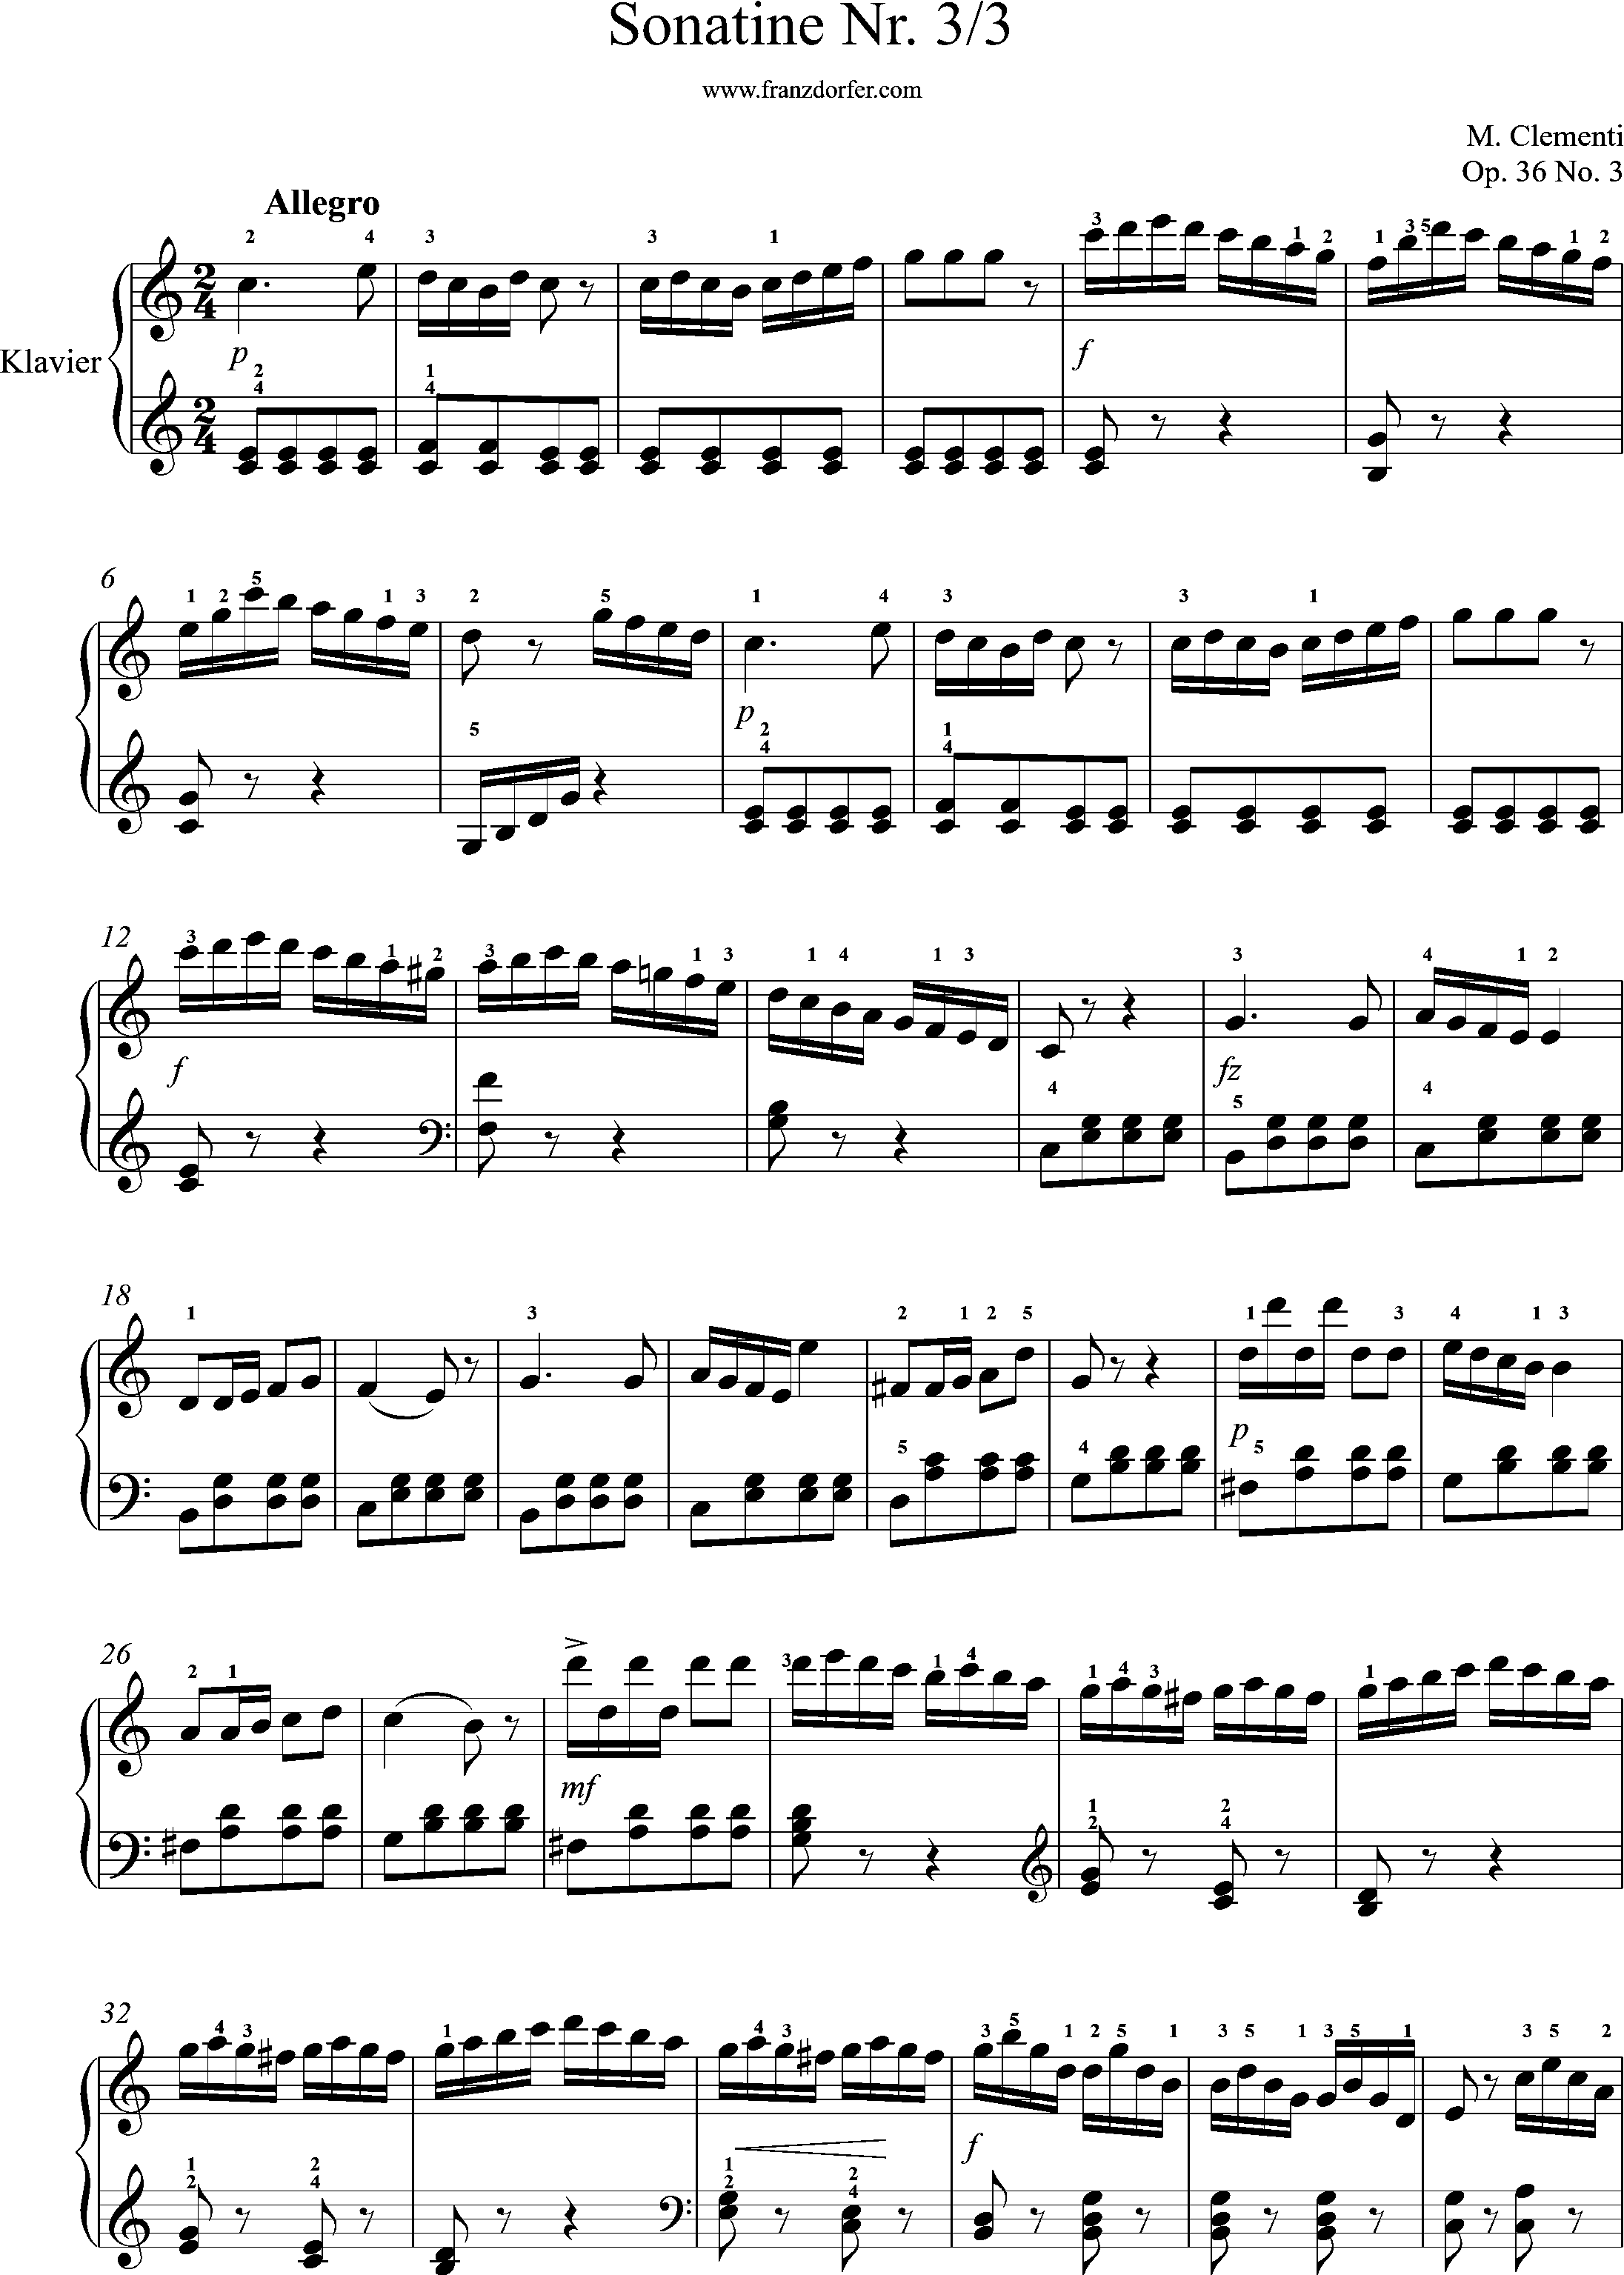 Clementi, Sonatine Nr. 3, 3. Satz - Allegro Seite 1